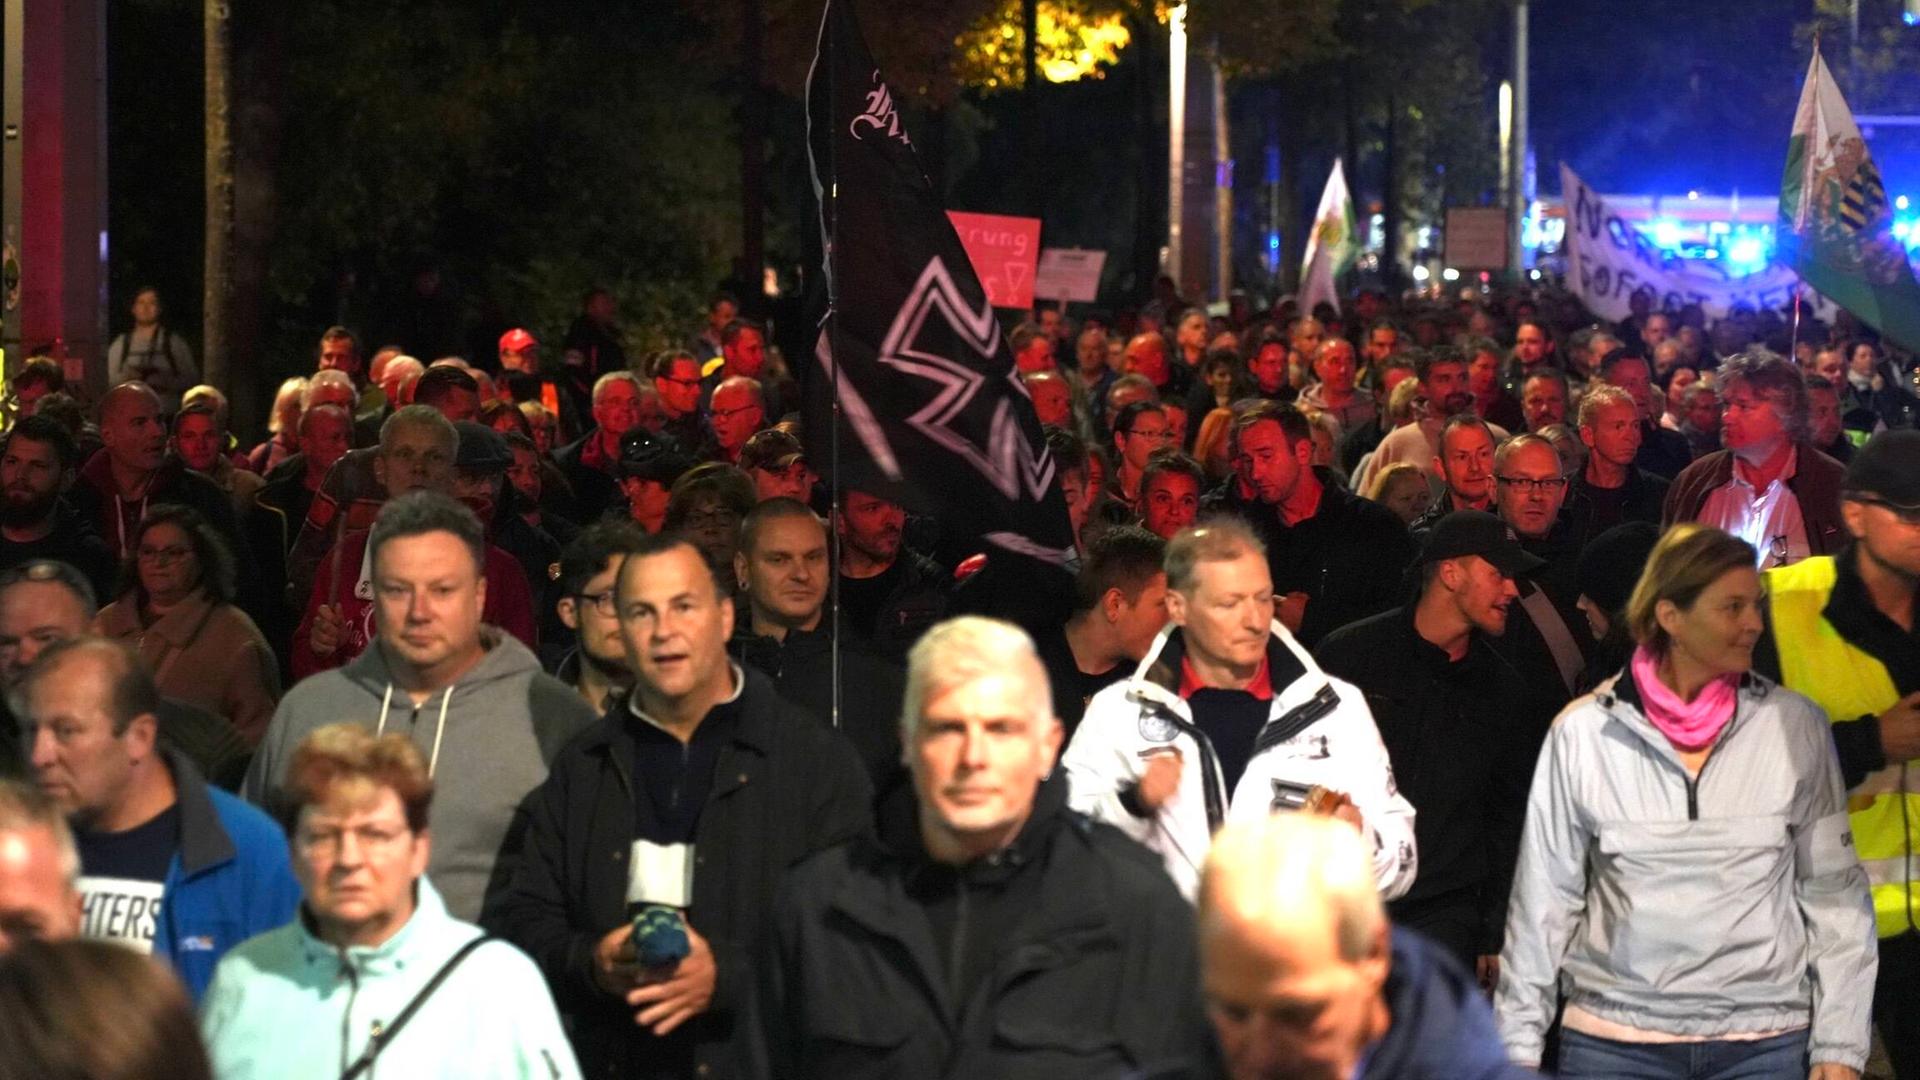 Viele Menschen demonstrieren auf einer Straße, in der Mitte ist eine alte Reichskriegsflagge mit schwarzem Kreuz zu sehen.